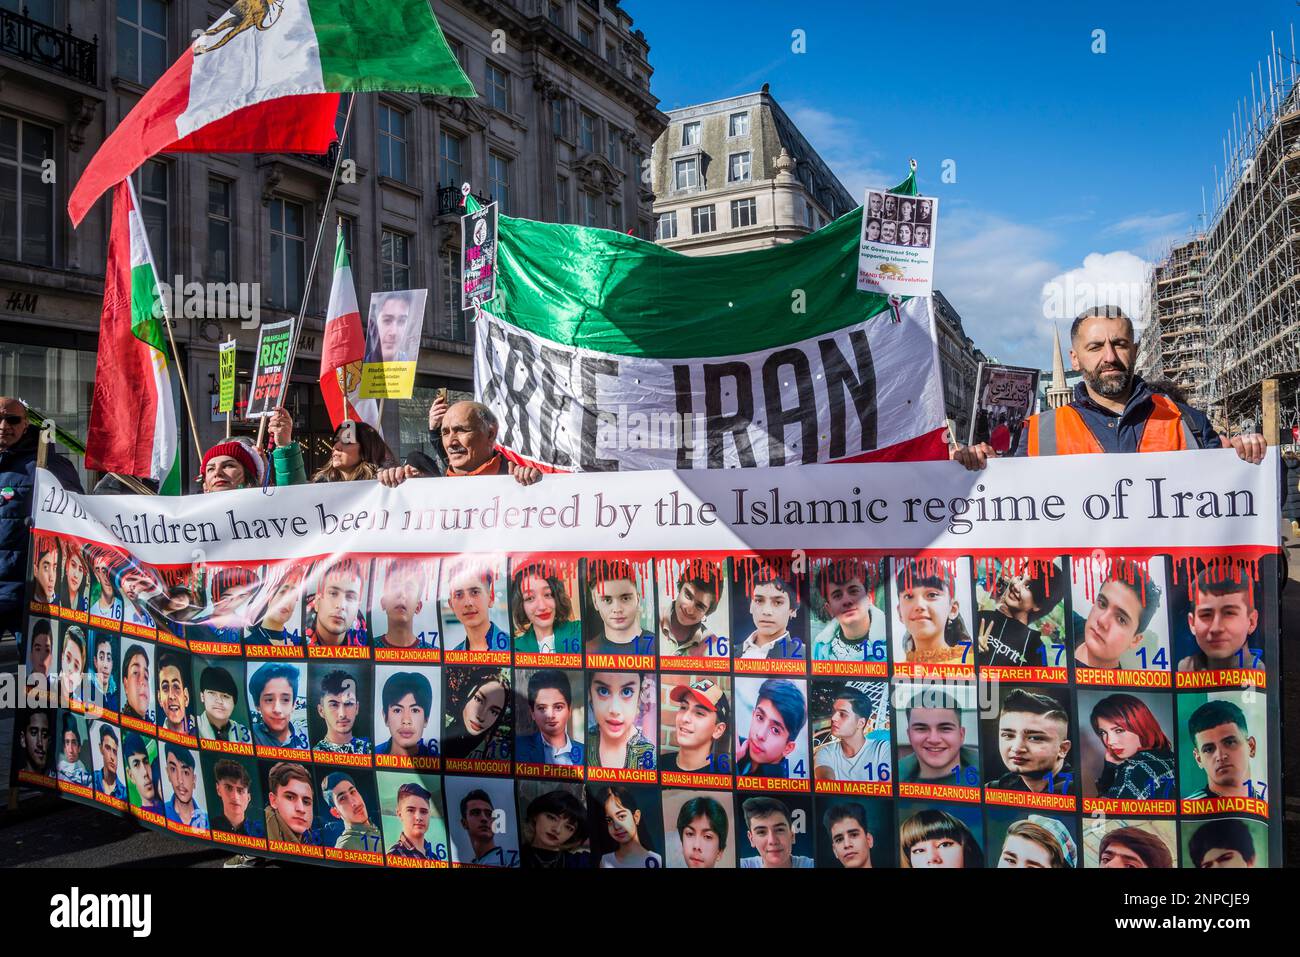 Banner mit Fotografien junger Menschen, die vom islamischen Regime getötet wurden, prodemokratischer iranischer Protest gegen die autokratische islamistische Regierung des Iran Stockfoto